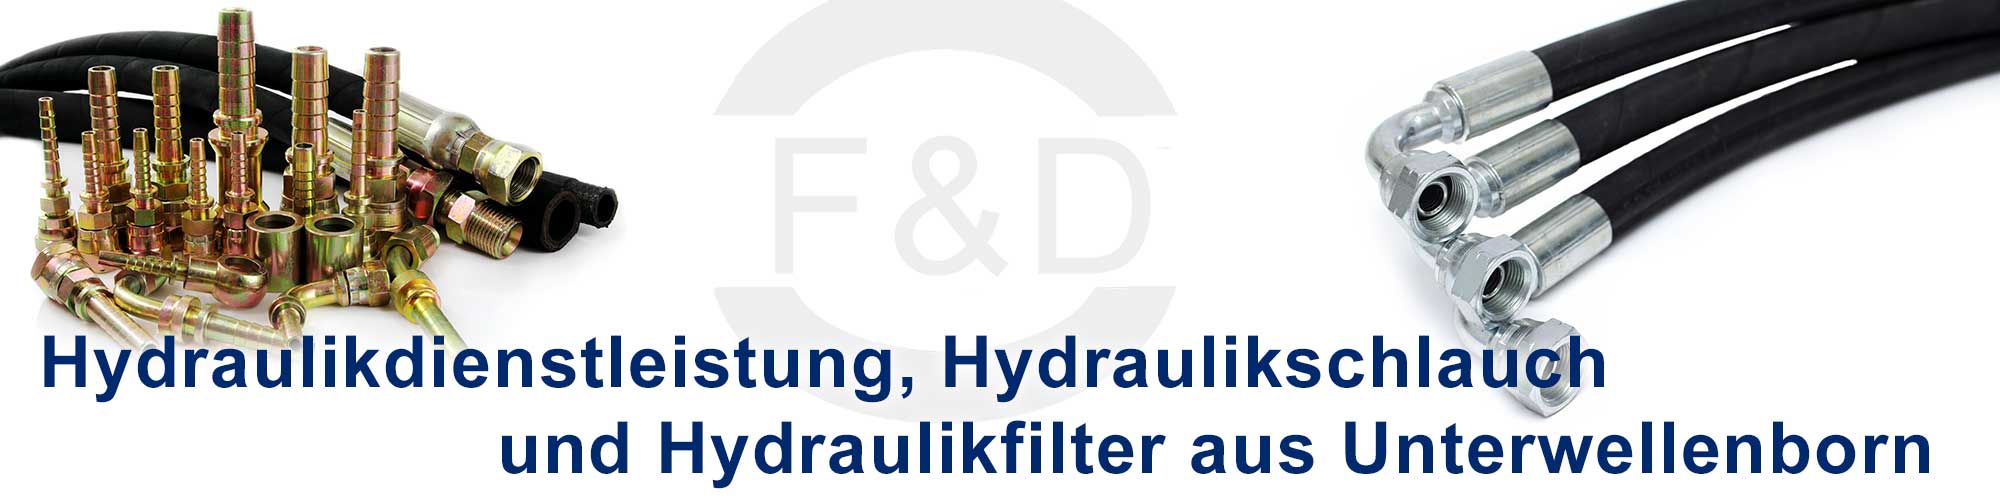 Hydraulikschlauch, Hydraulikfilter